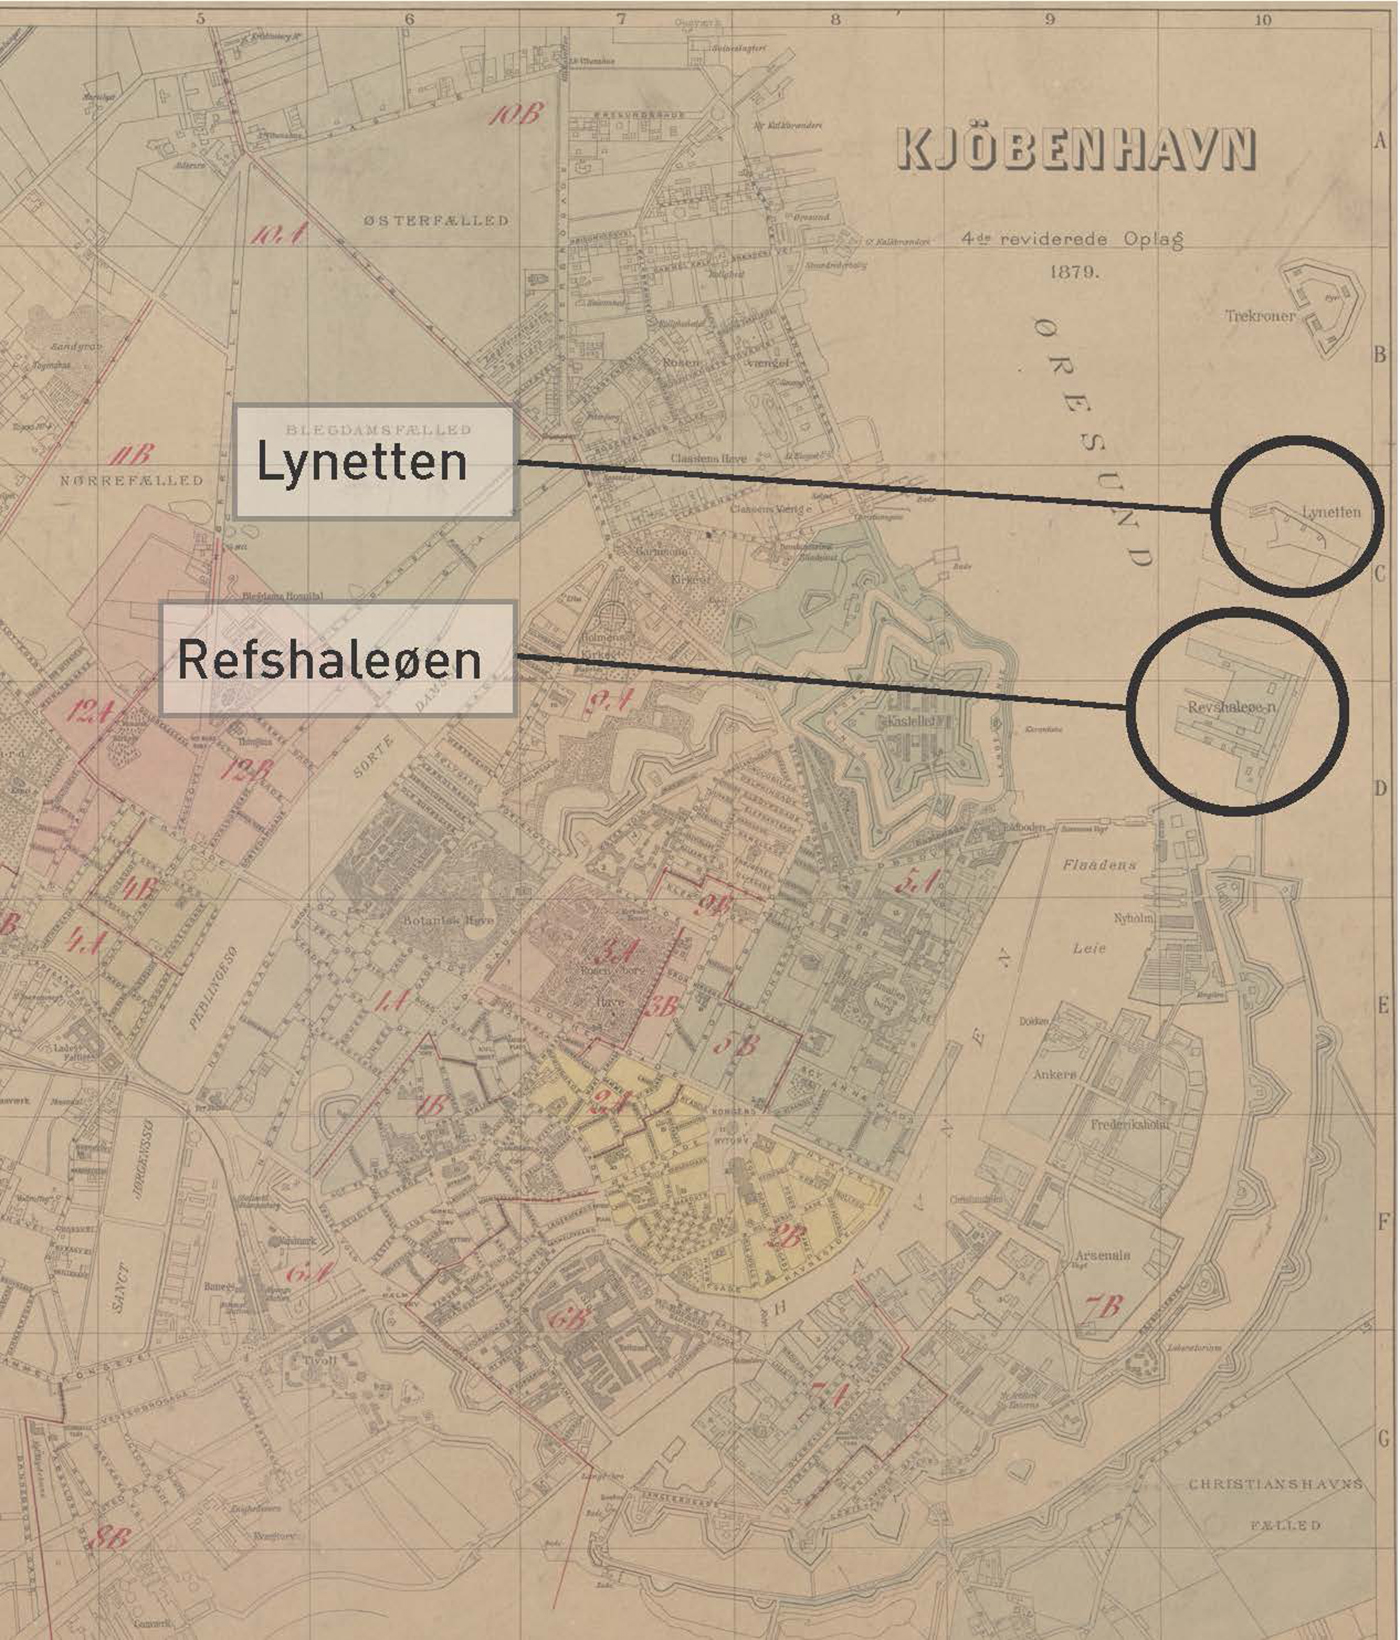 I anden halvdel af 1800-tallet er det ikke krigen, men industrialiseringen, der er i fokus. Driftigheden sætter gang i de københavnske hjul, og i 1868 rejser Refshaleøen sig af havet. Det ene opfyld efter det andet smeder snart Refshaleøen og søbefæstningen Lynetten sammen.